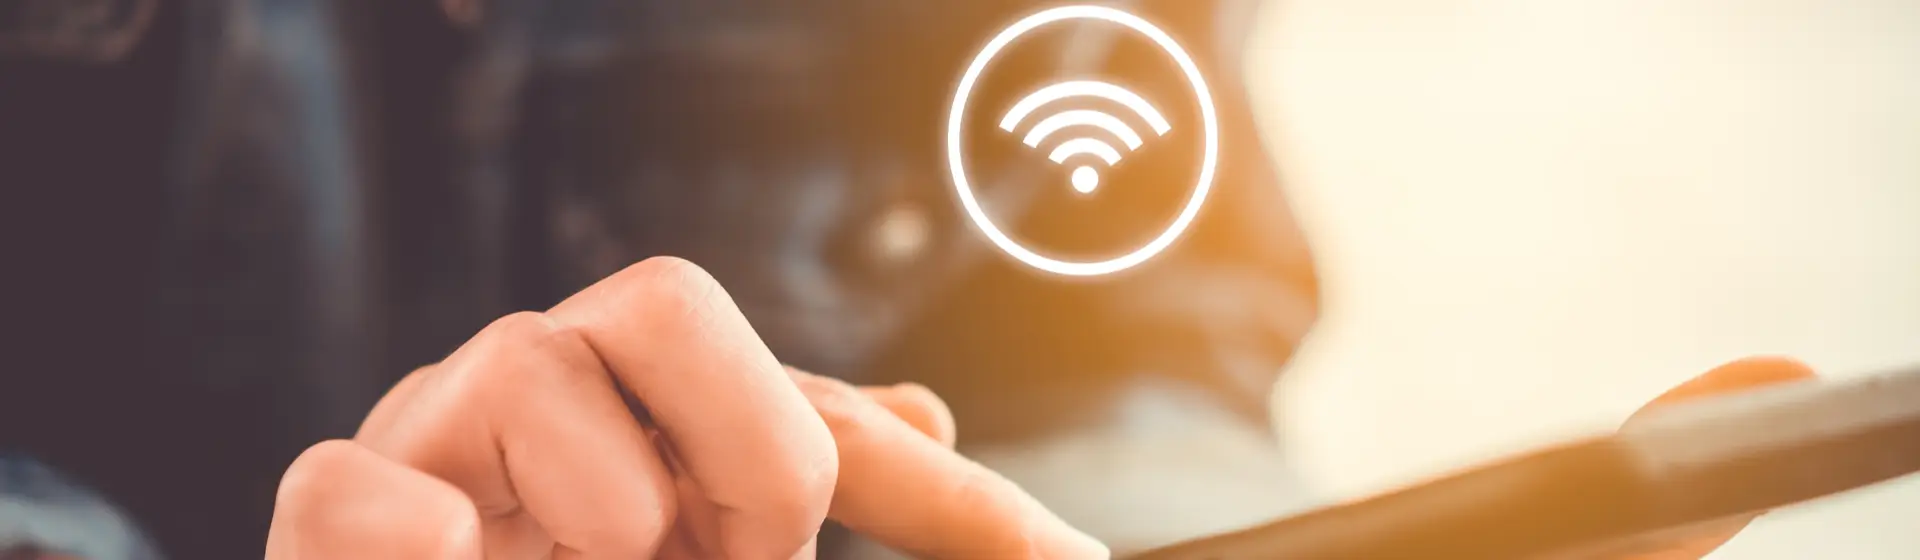 Beamforming: o que é e como pode ajudar a melhorar seu sinal Wi-Fi?